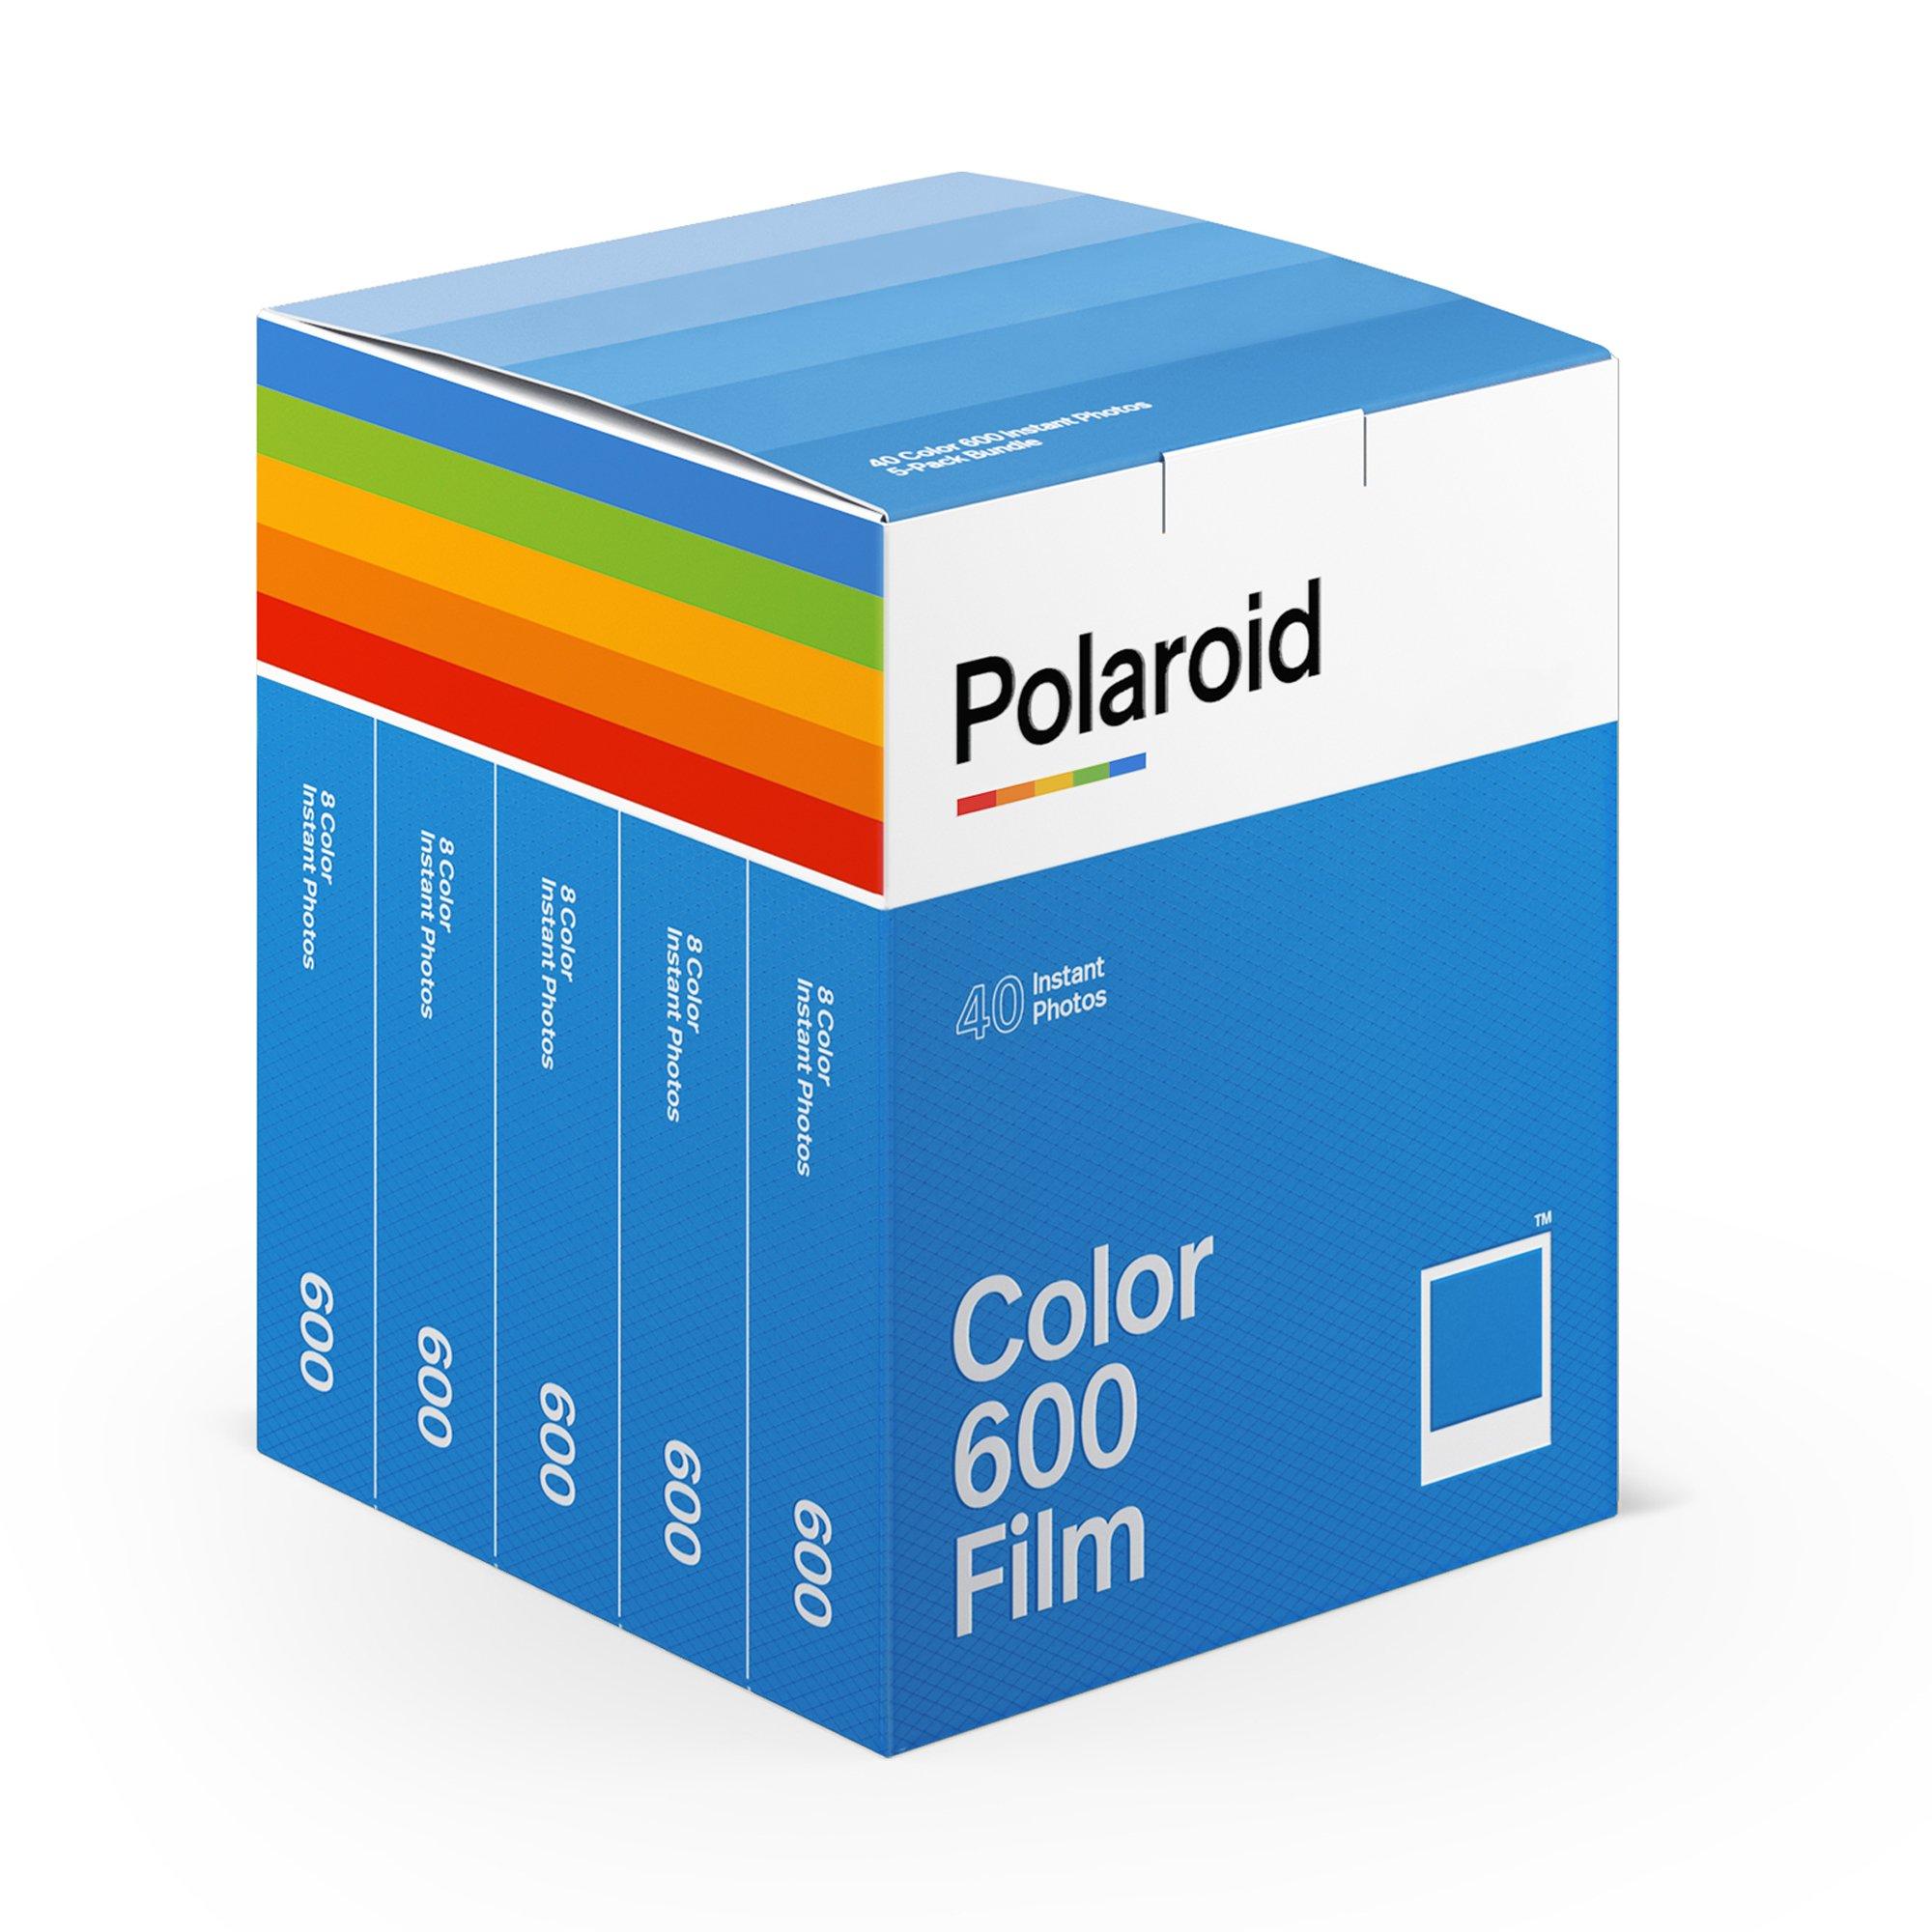 Image of Polaroid Colo 600 Film (5x8 Photos) Sofortbildfilme